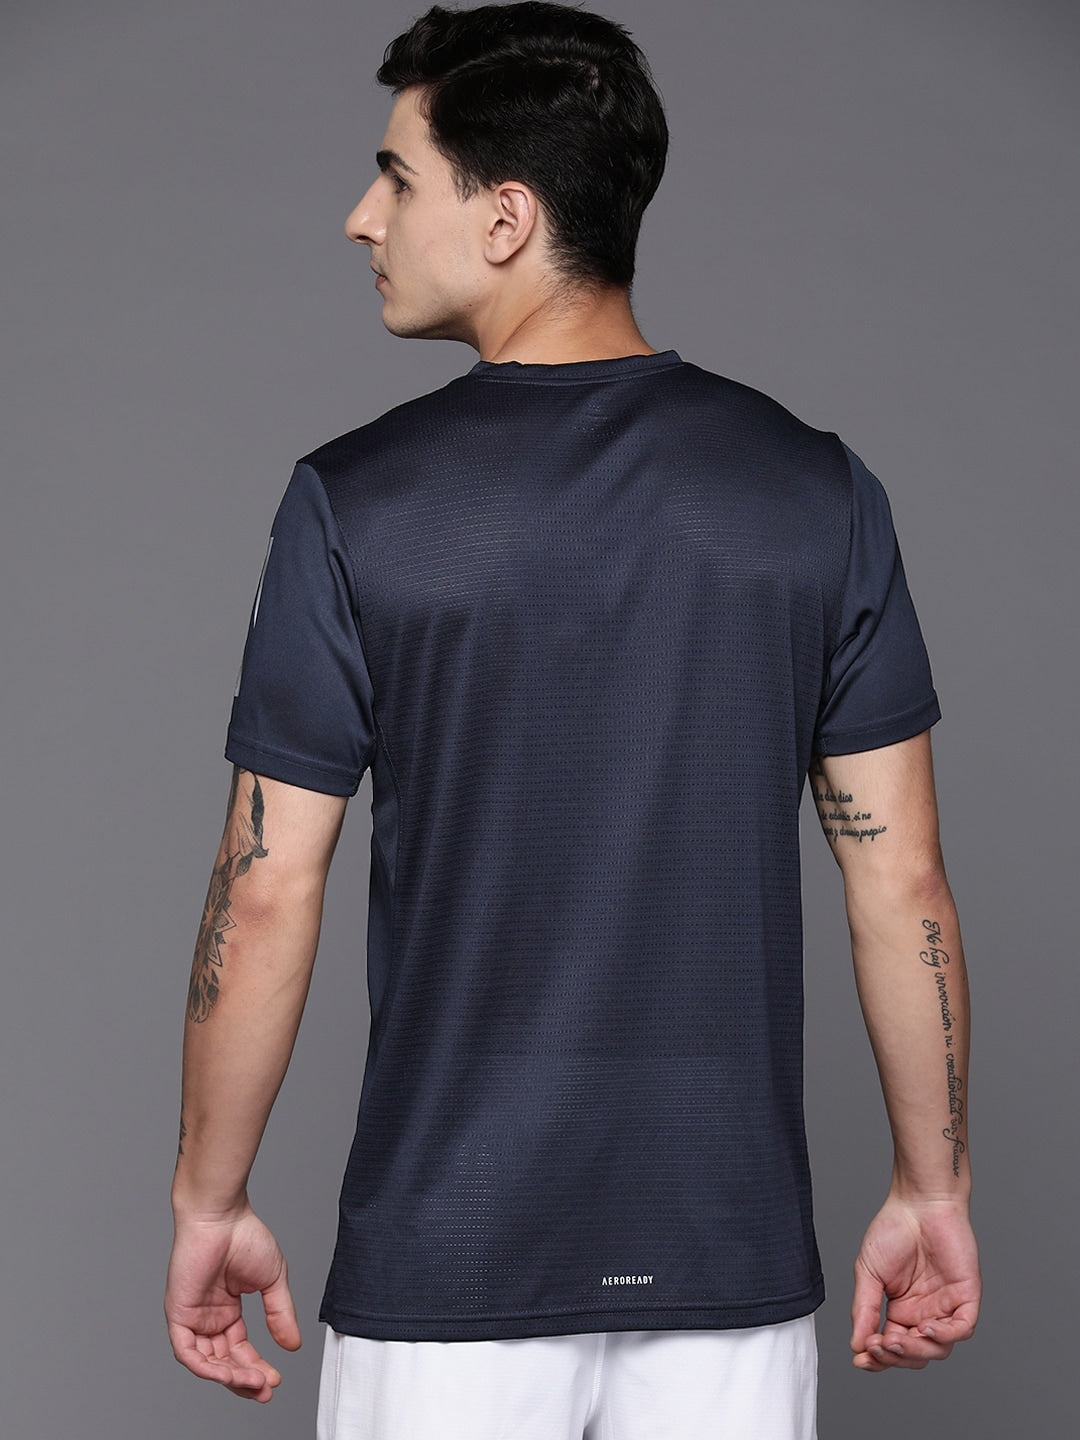 Adidas Own The Run T-shirt - Distacart